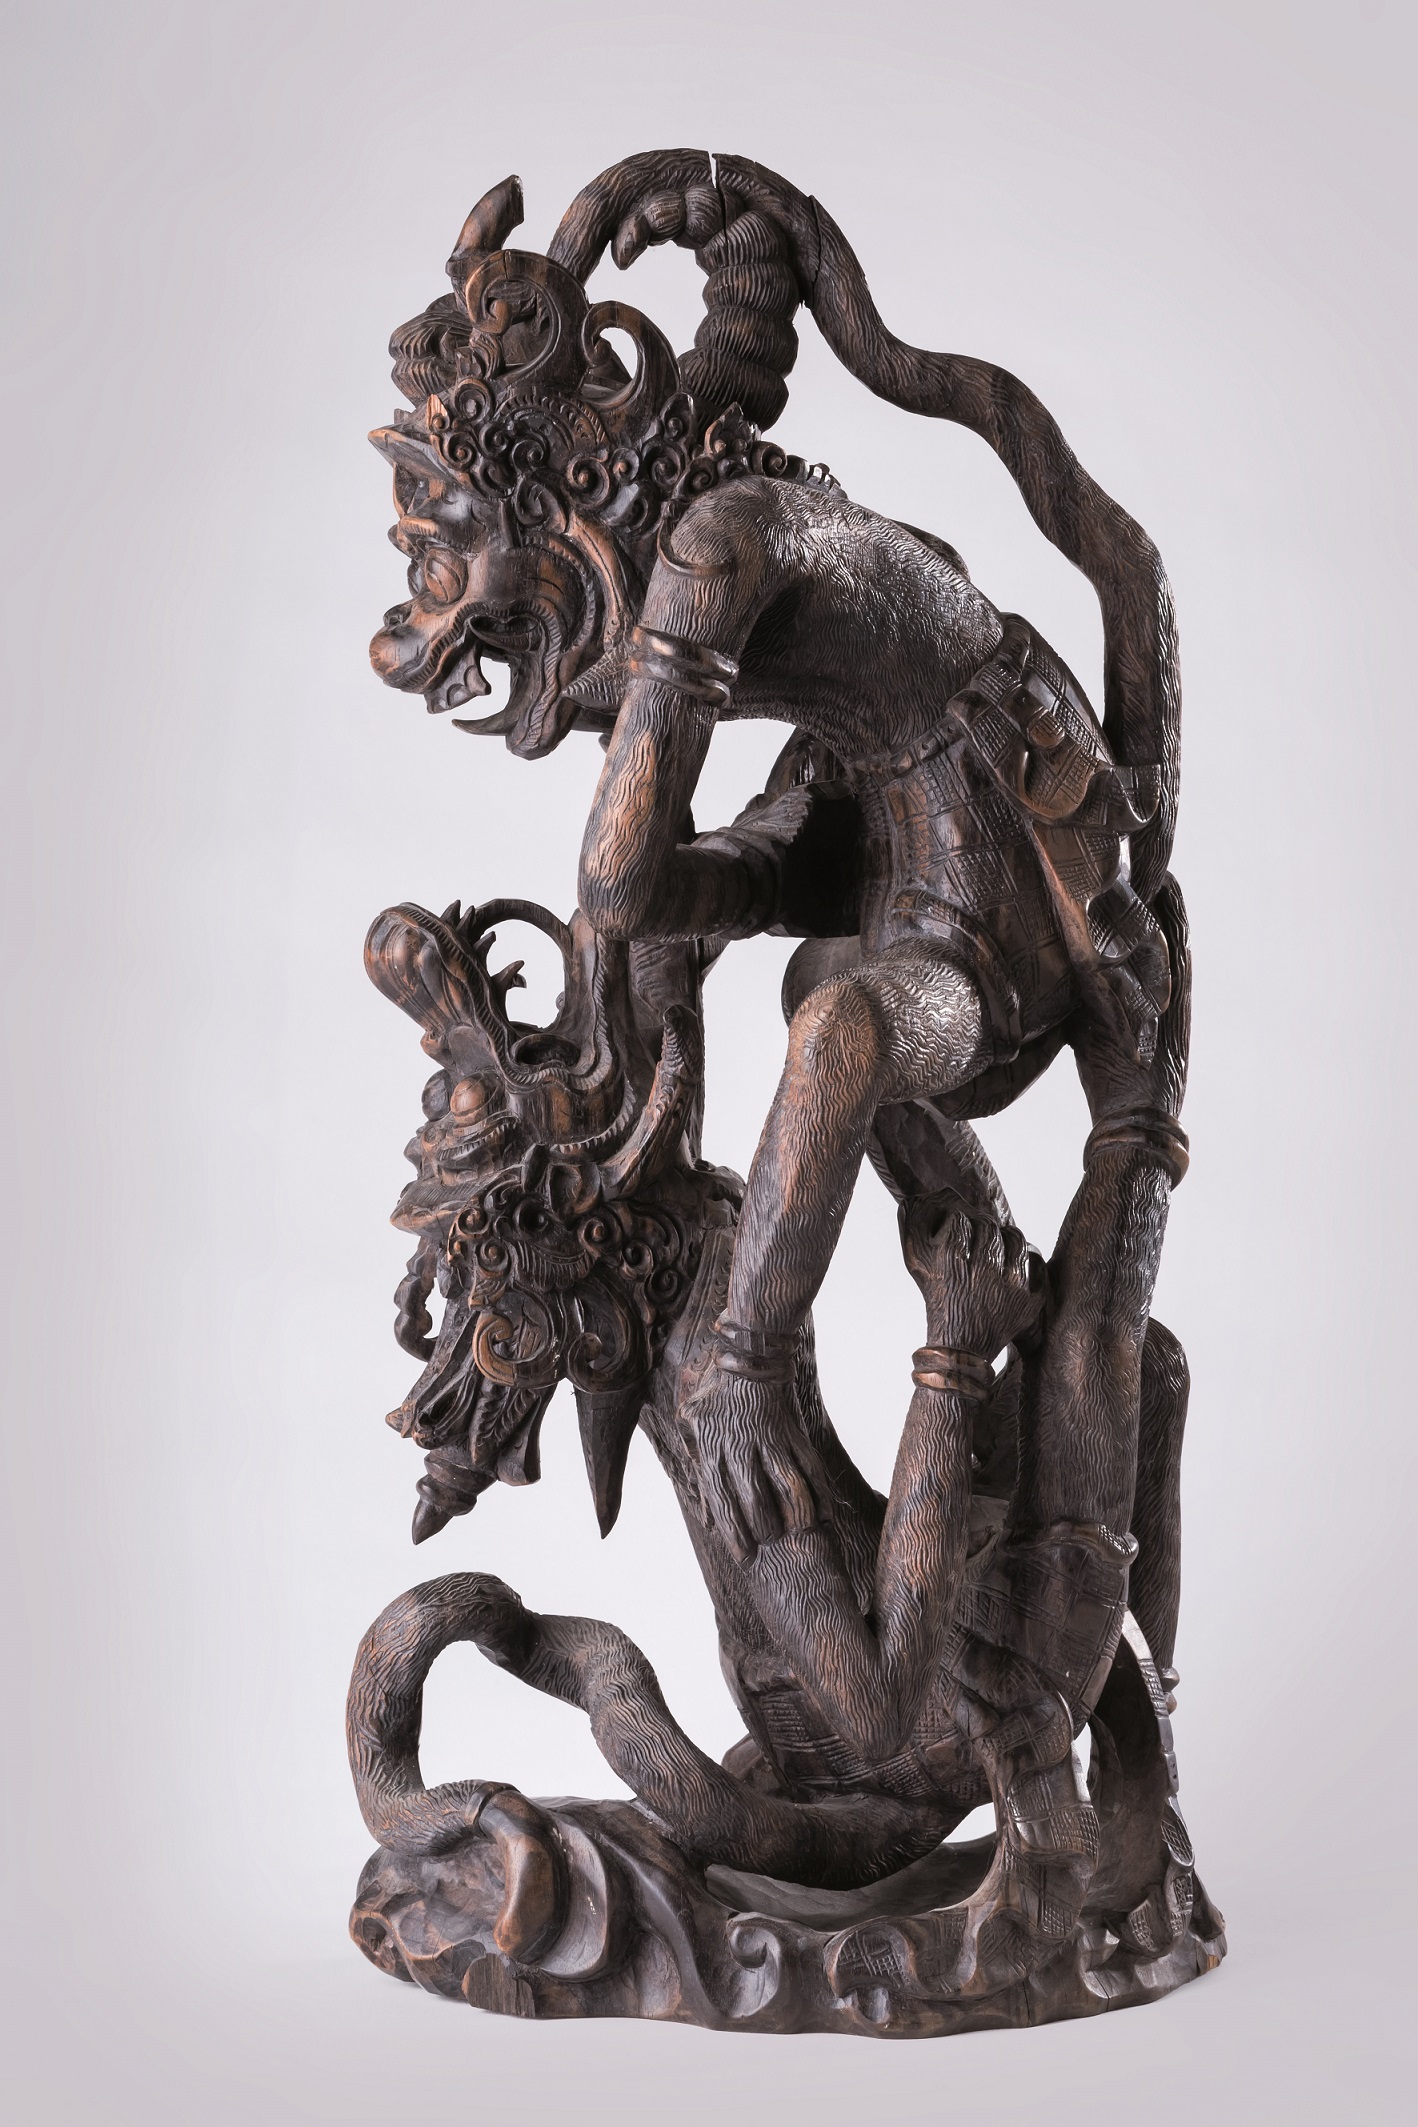 Anonimowy rzeźbiarz balijski „Król Małp Hanuman walczący ze smoczym demonem”, ok. 1970 (źródło: materiały prasowe organizatora)